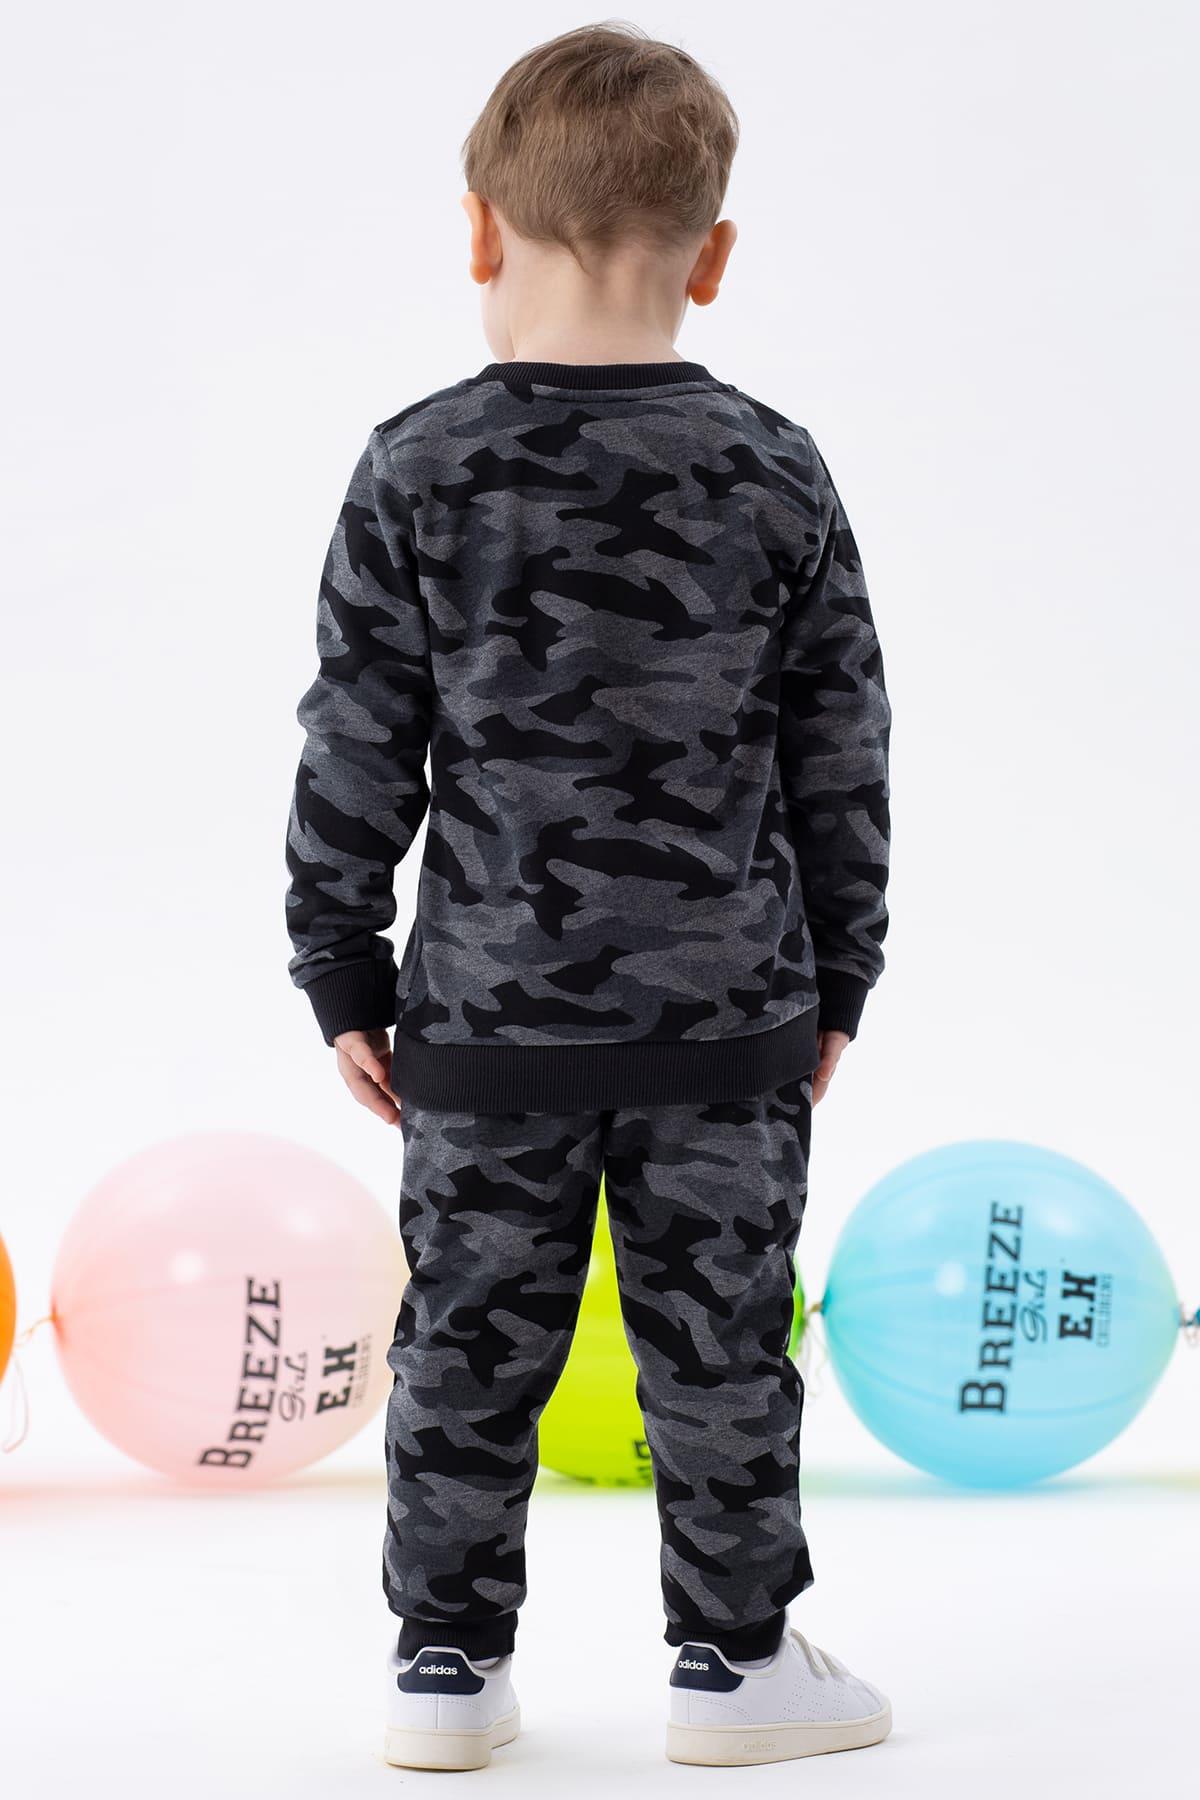 Erkek Bebek Eşofman Takımı Kamuflaj Desenli Karışık Renk 1.5-2 Yaş  -Sıcacıkl Çocuk Takımları | Breeze